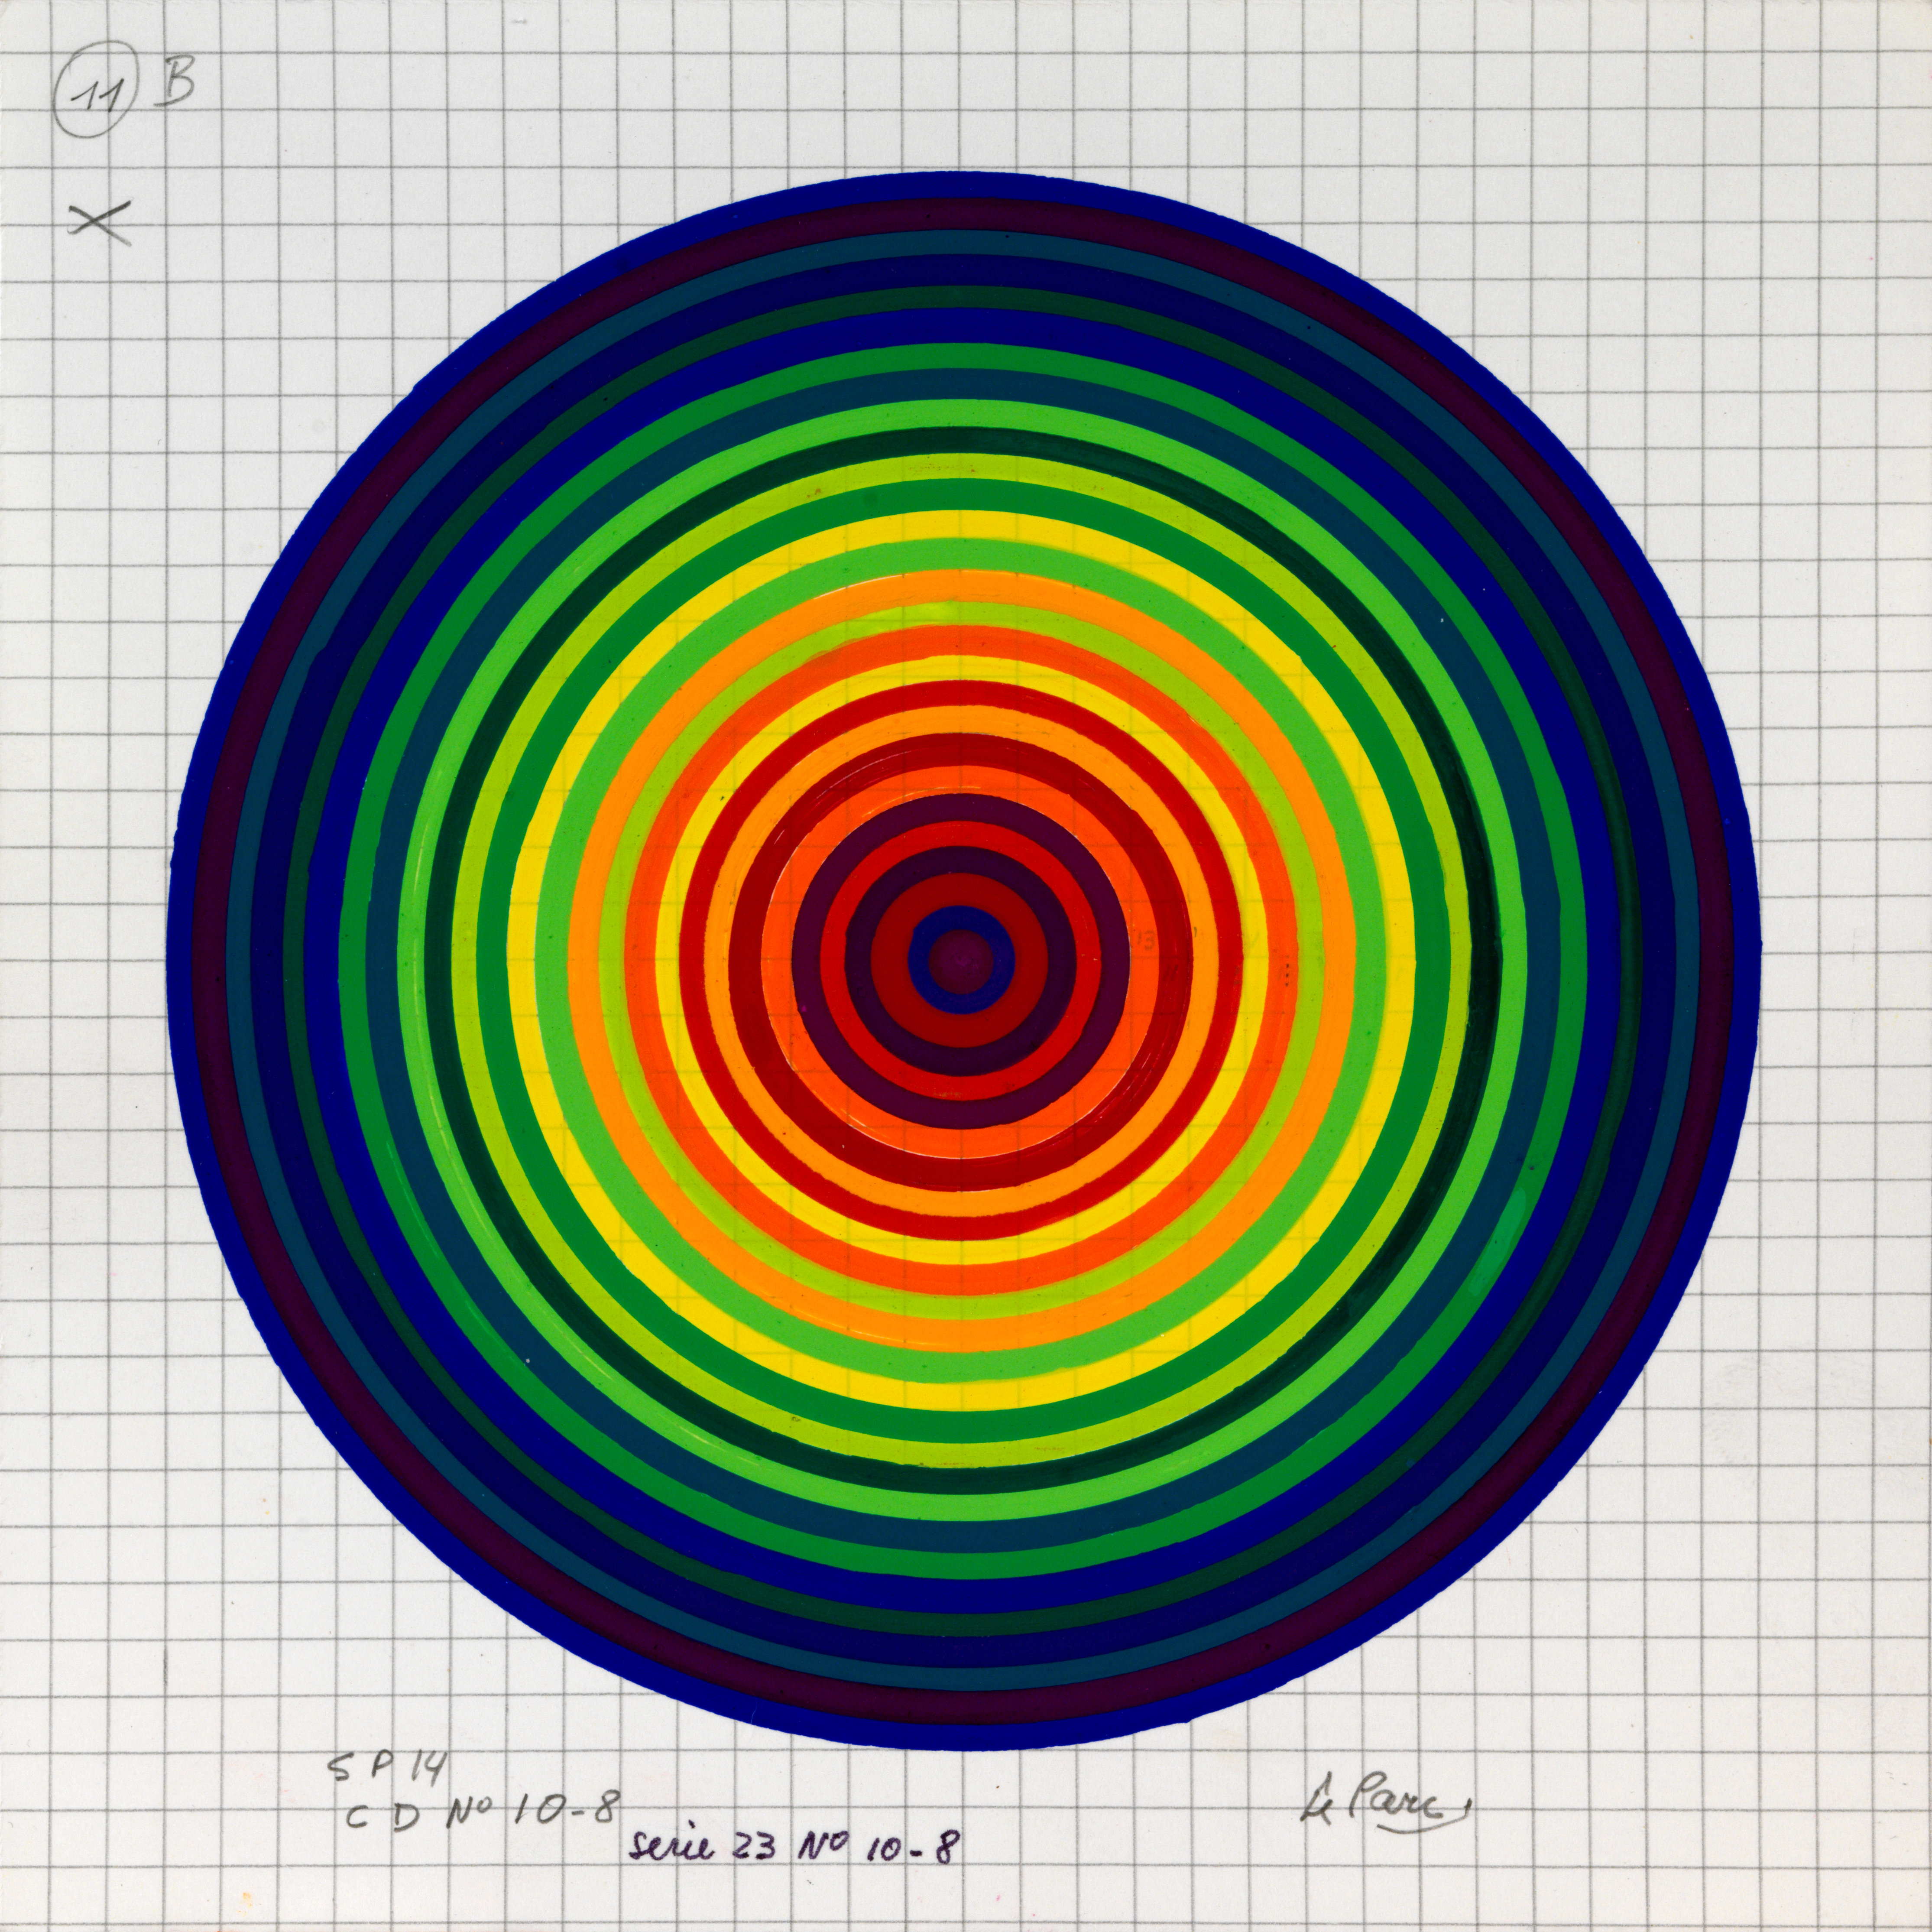 Julio Le Parc, Surface couleur, Cercles, série 23 n°10-8